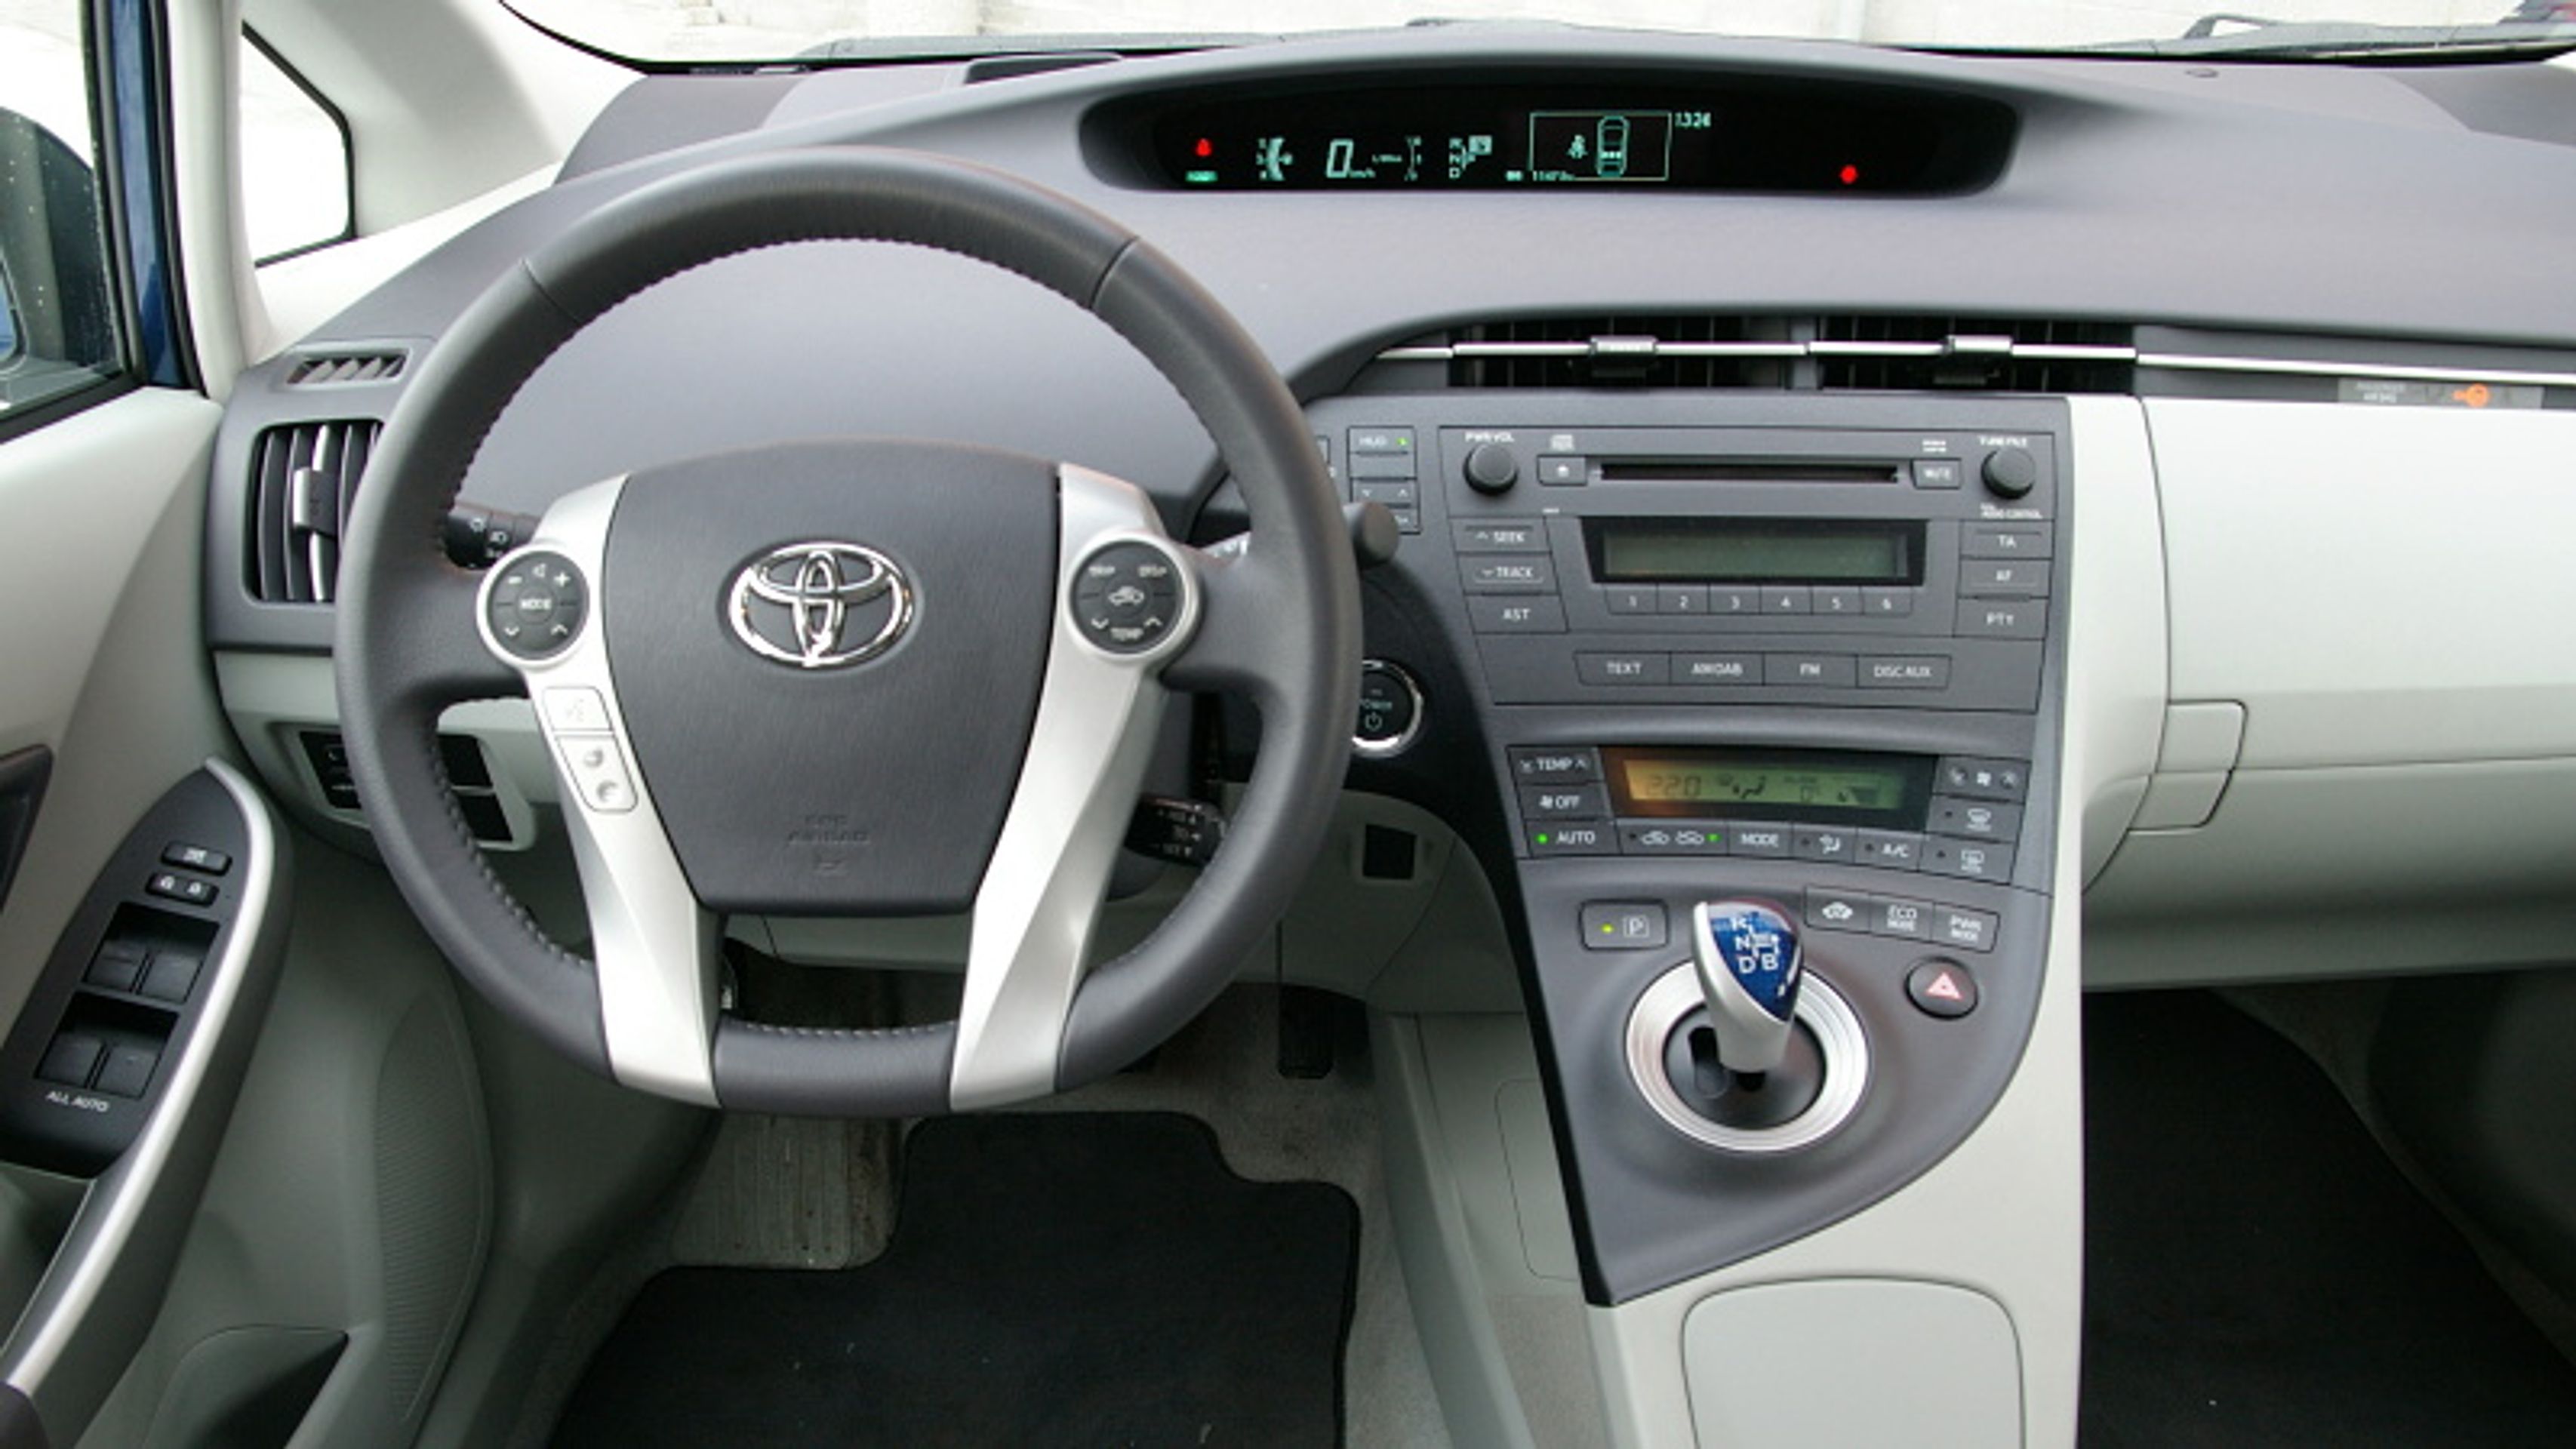 Toyota Prius-6 - GALERIE Toyota Prius (1/8)